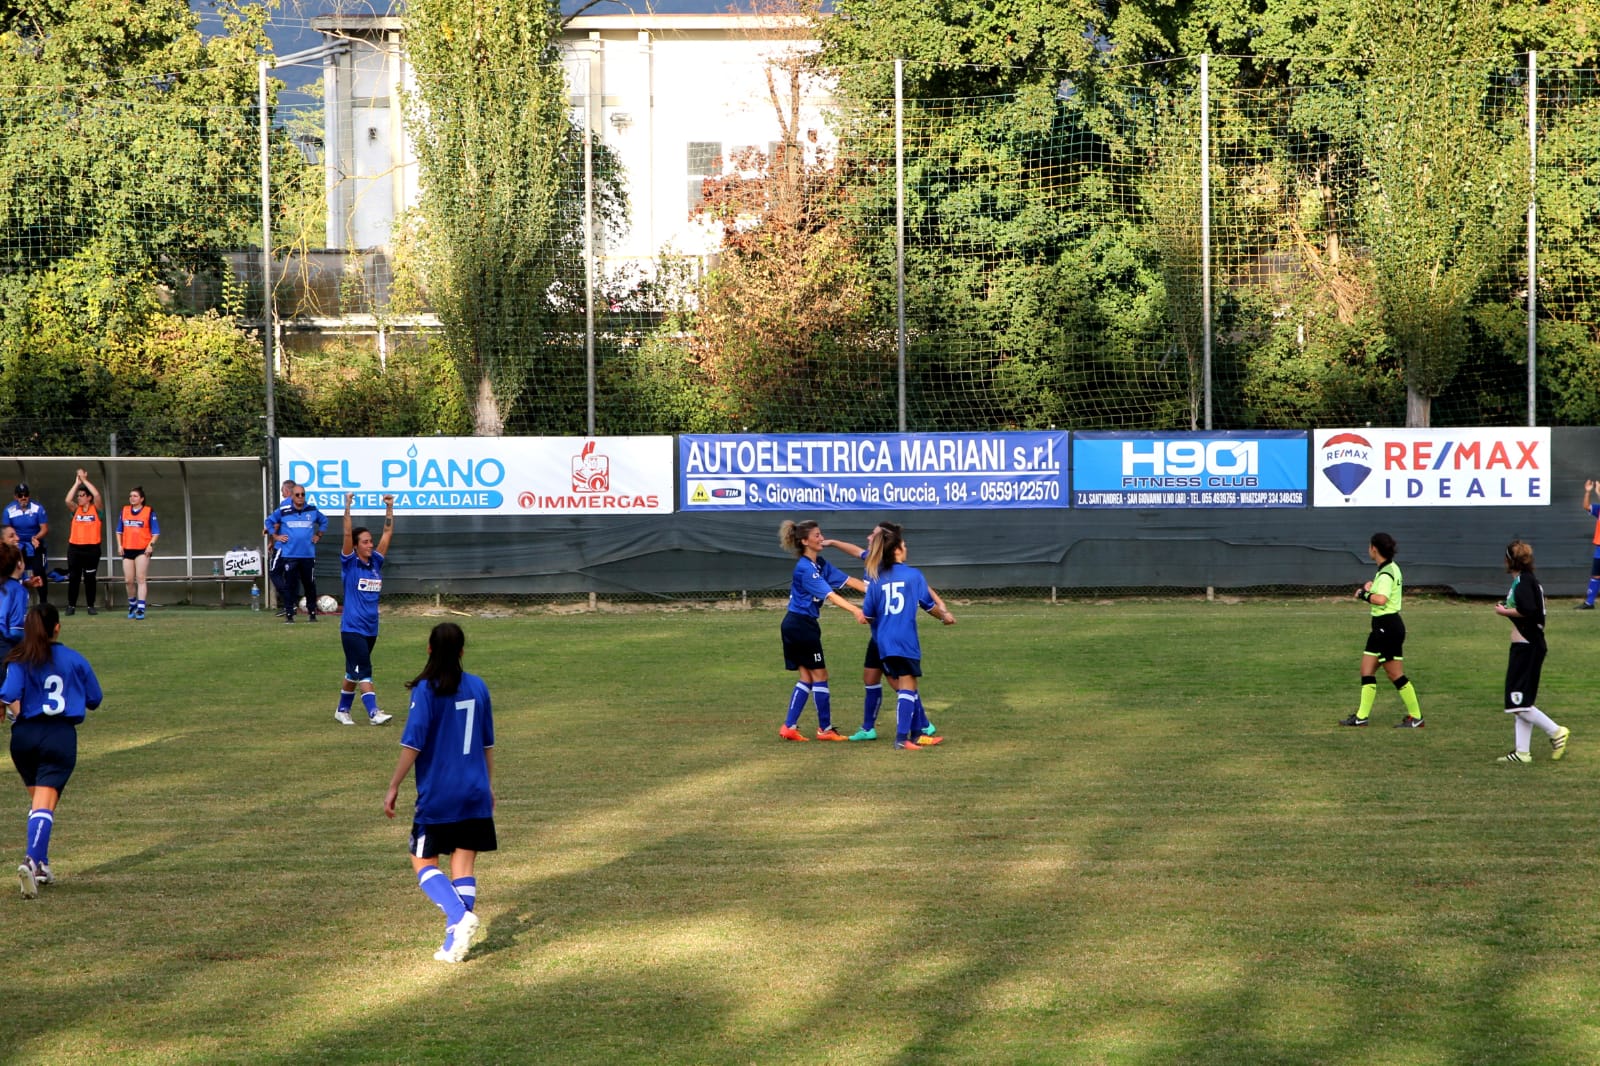 “Remax Ideale” è il main sponsor della squadra femminile della Sangiovannese